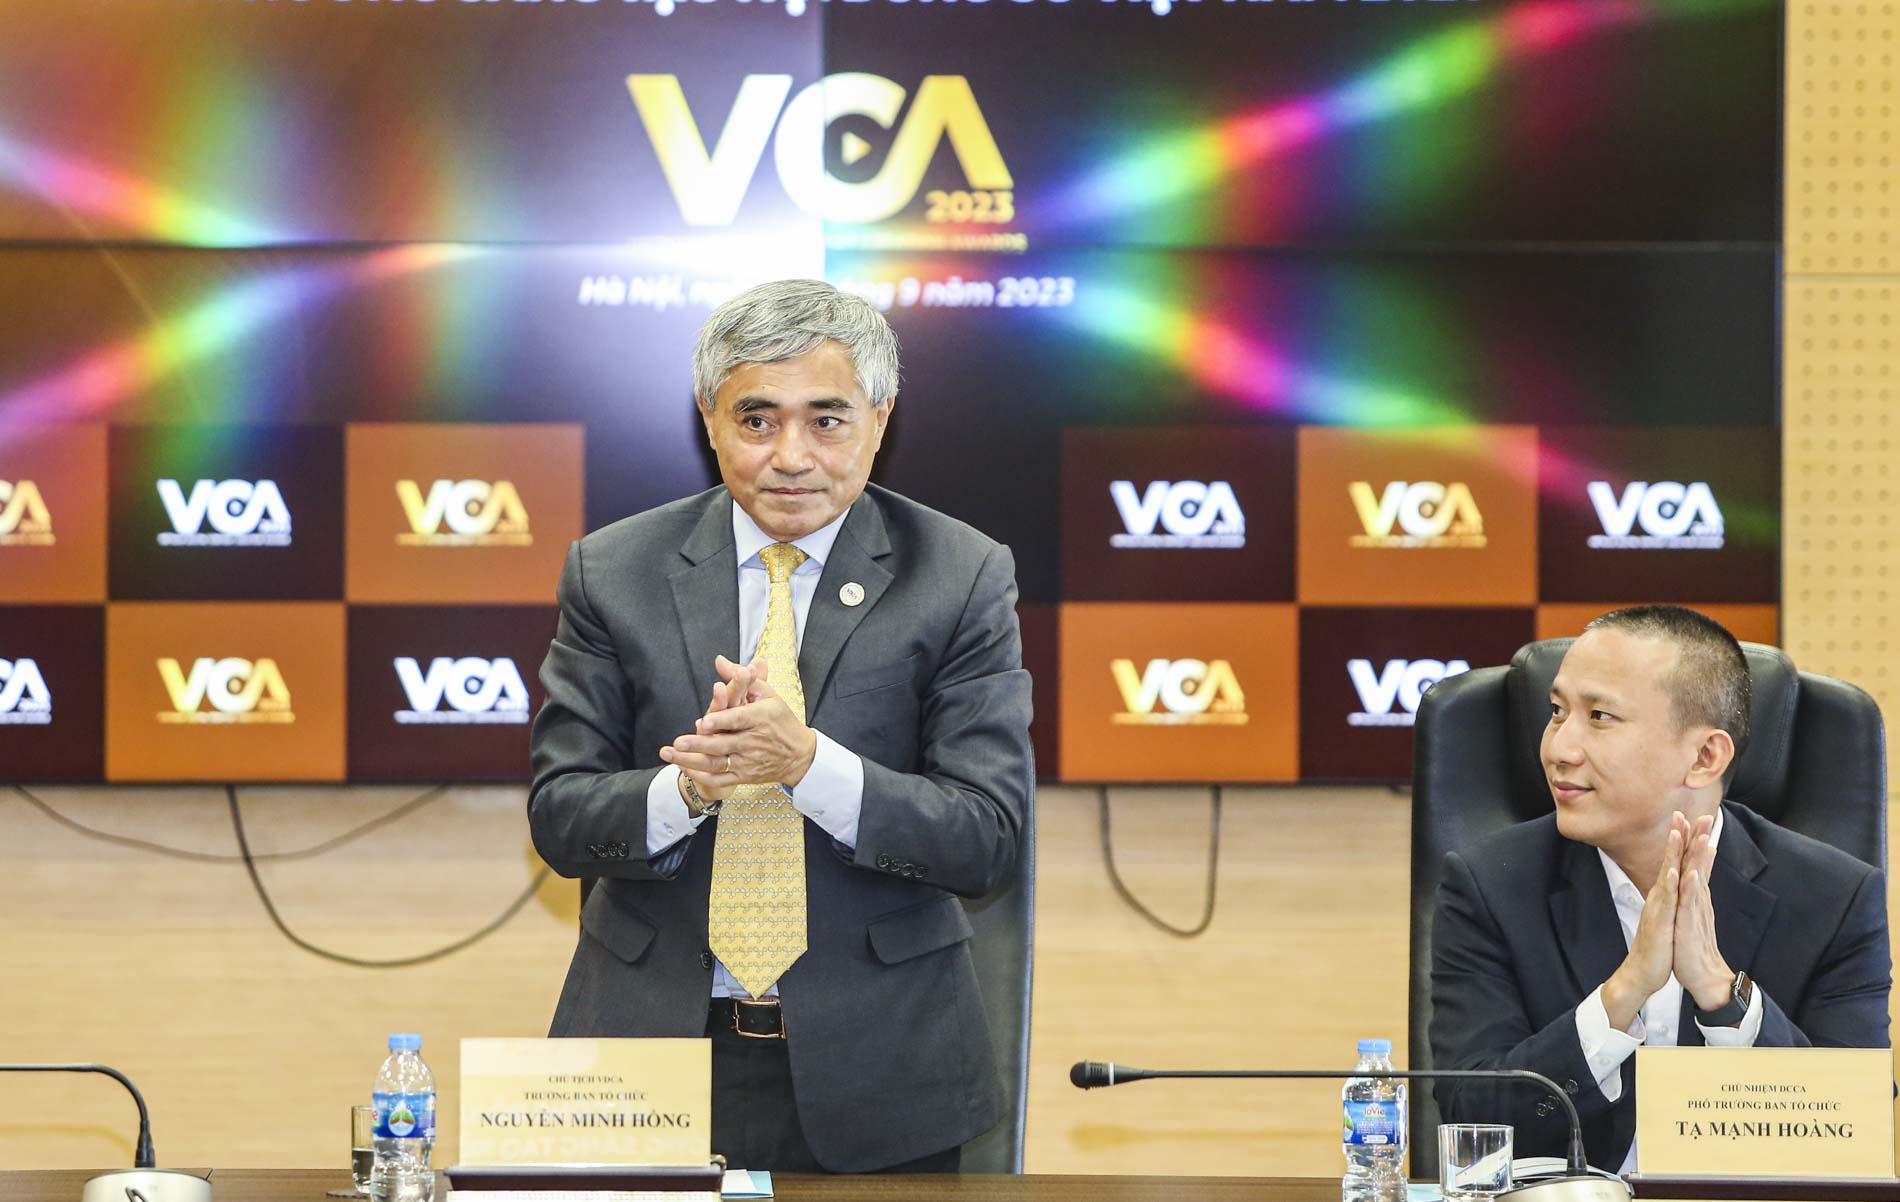 Tiến sĩ Nguyễn Minh Hồng - Chủ tịch VDCA kiêm Trưởng ban tổ chức VCA 2023